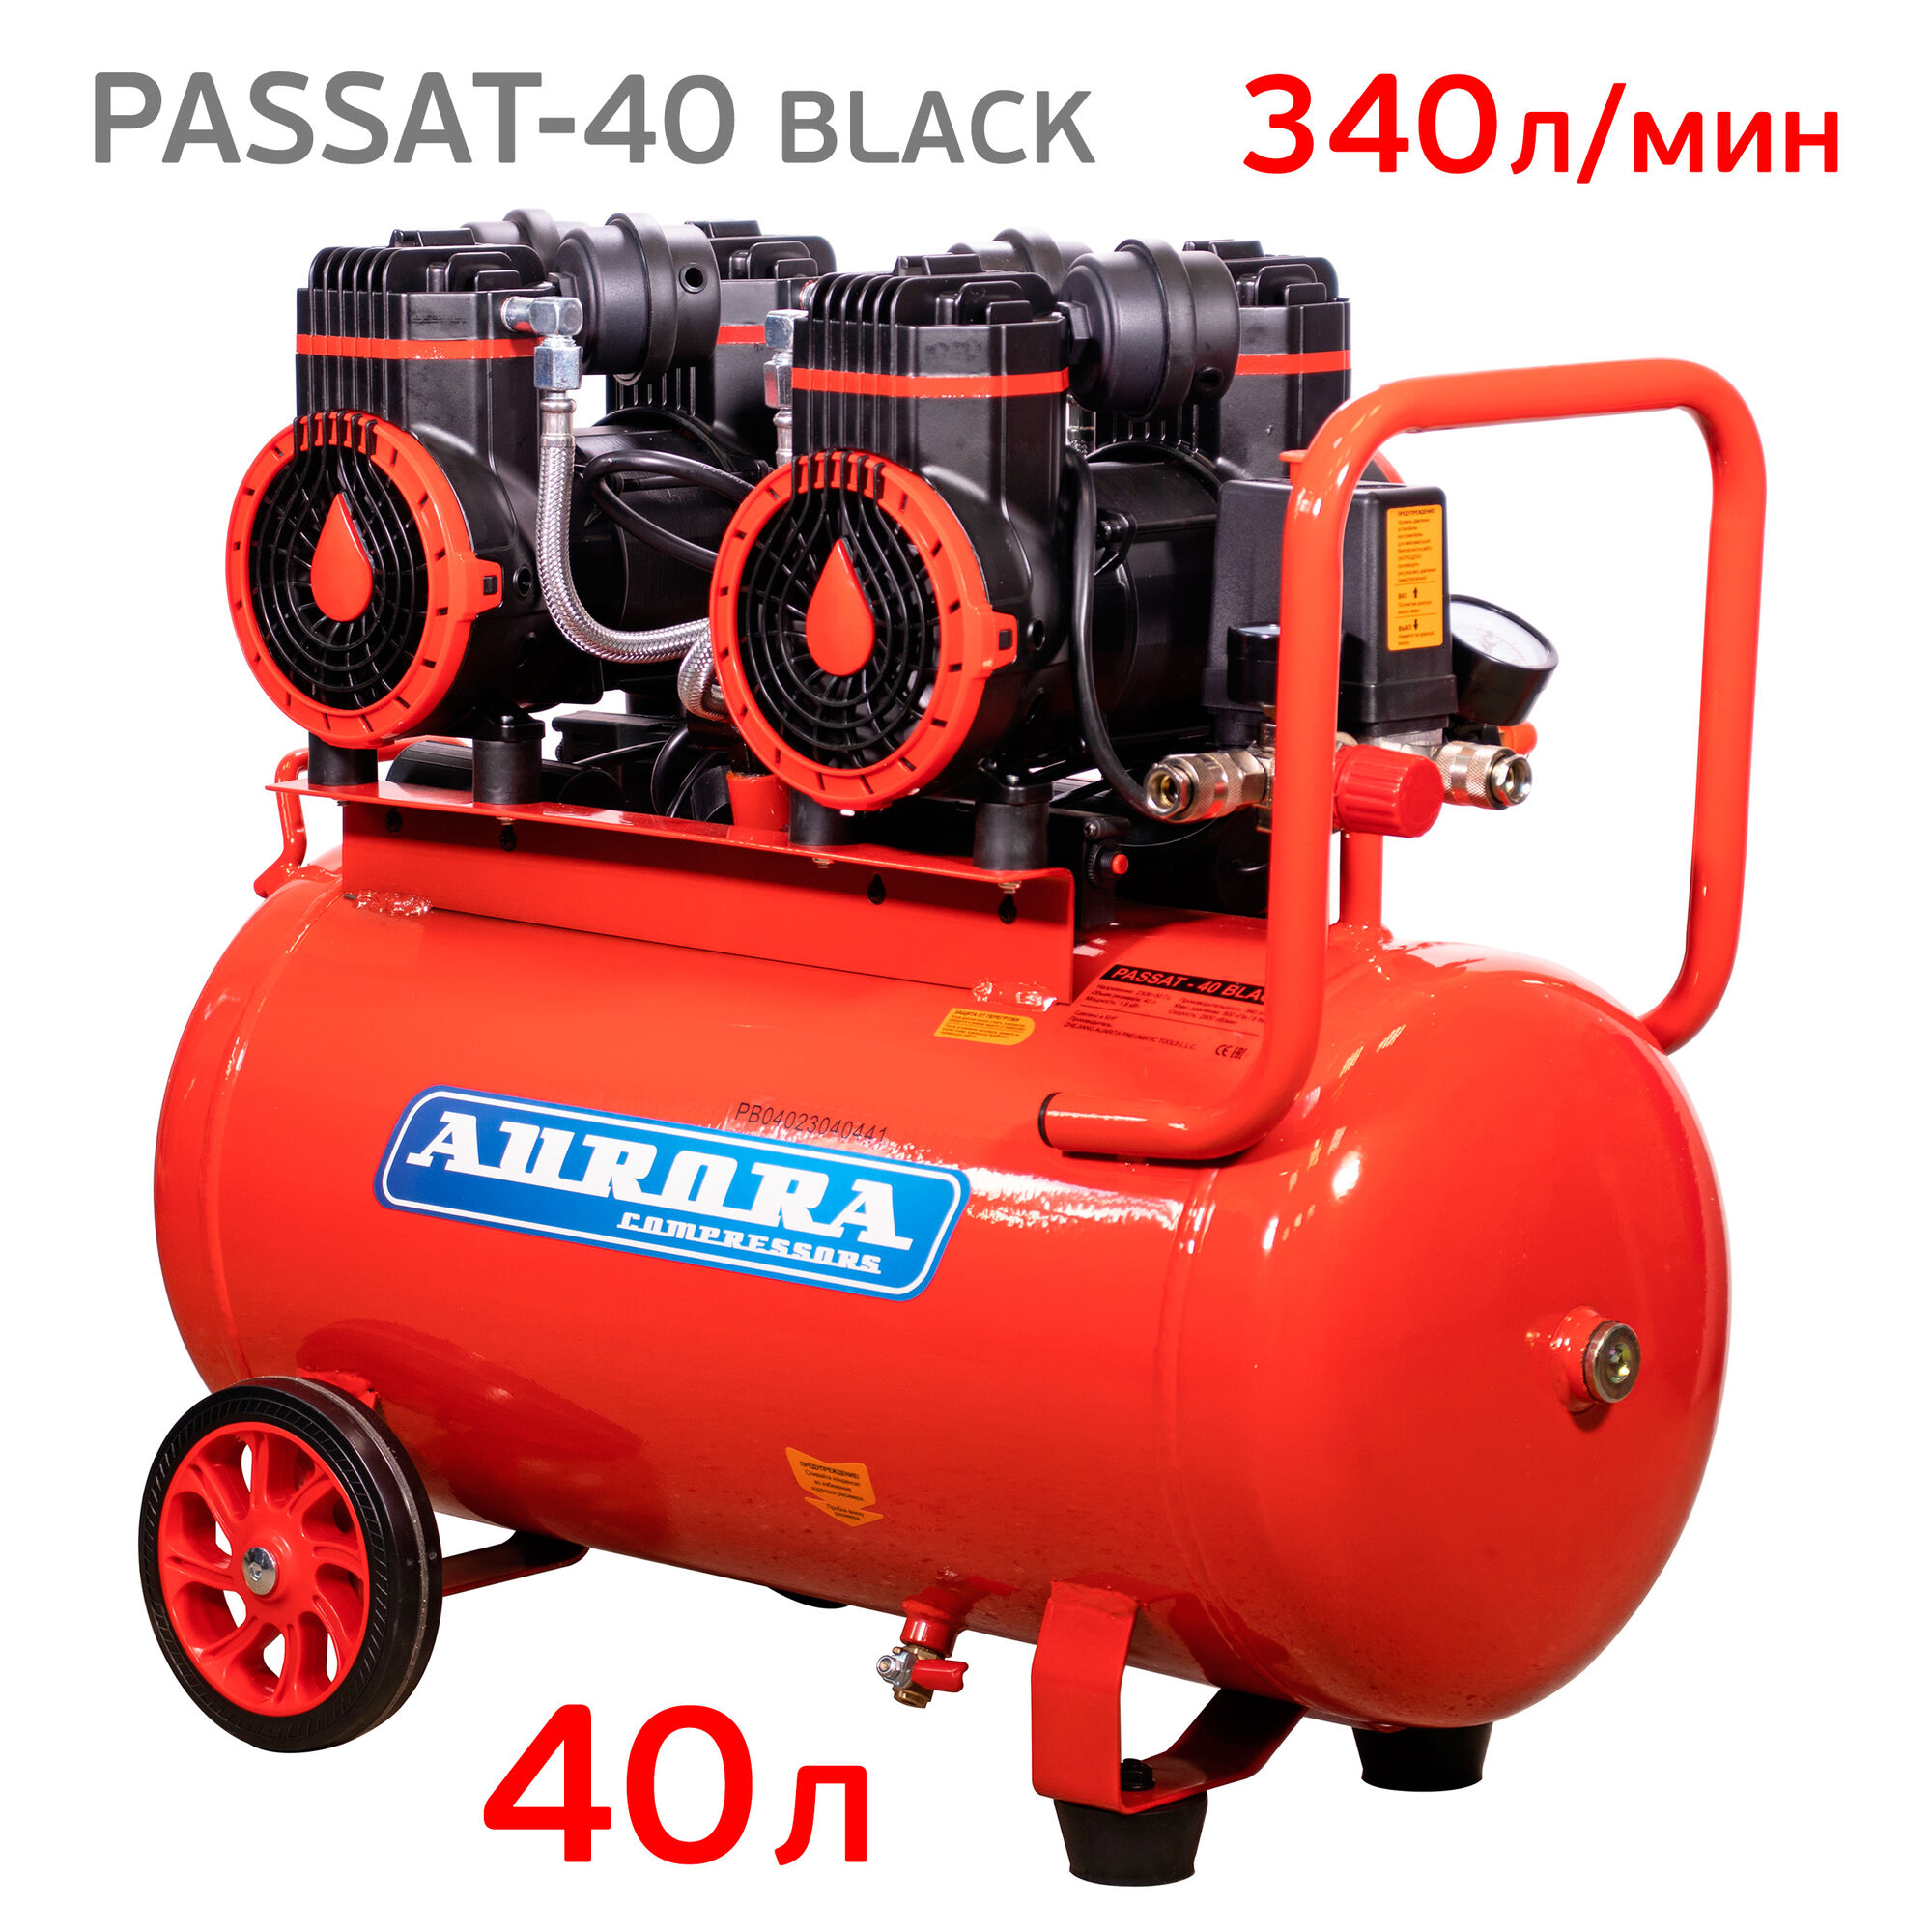 Компрессор Aurora PASSAT-40 Black (340л/мин) безмасляный 40л, 220В, 1.8кВт, 8бар